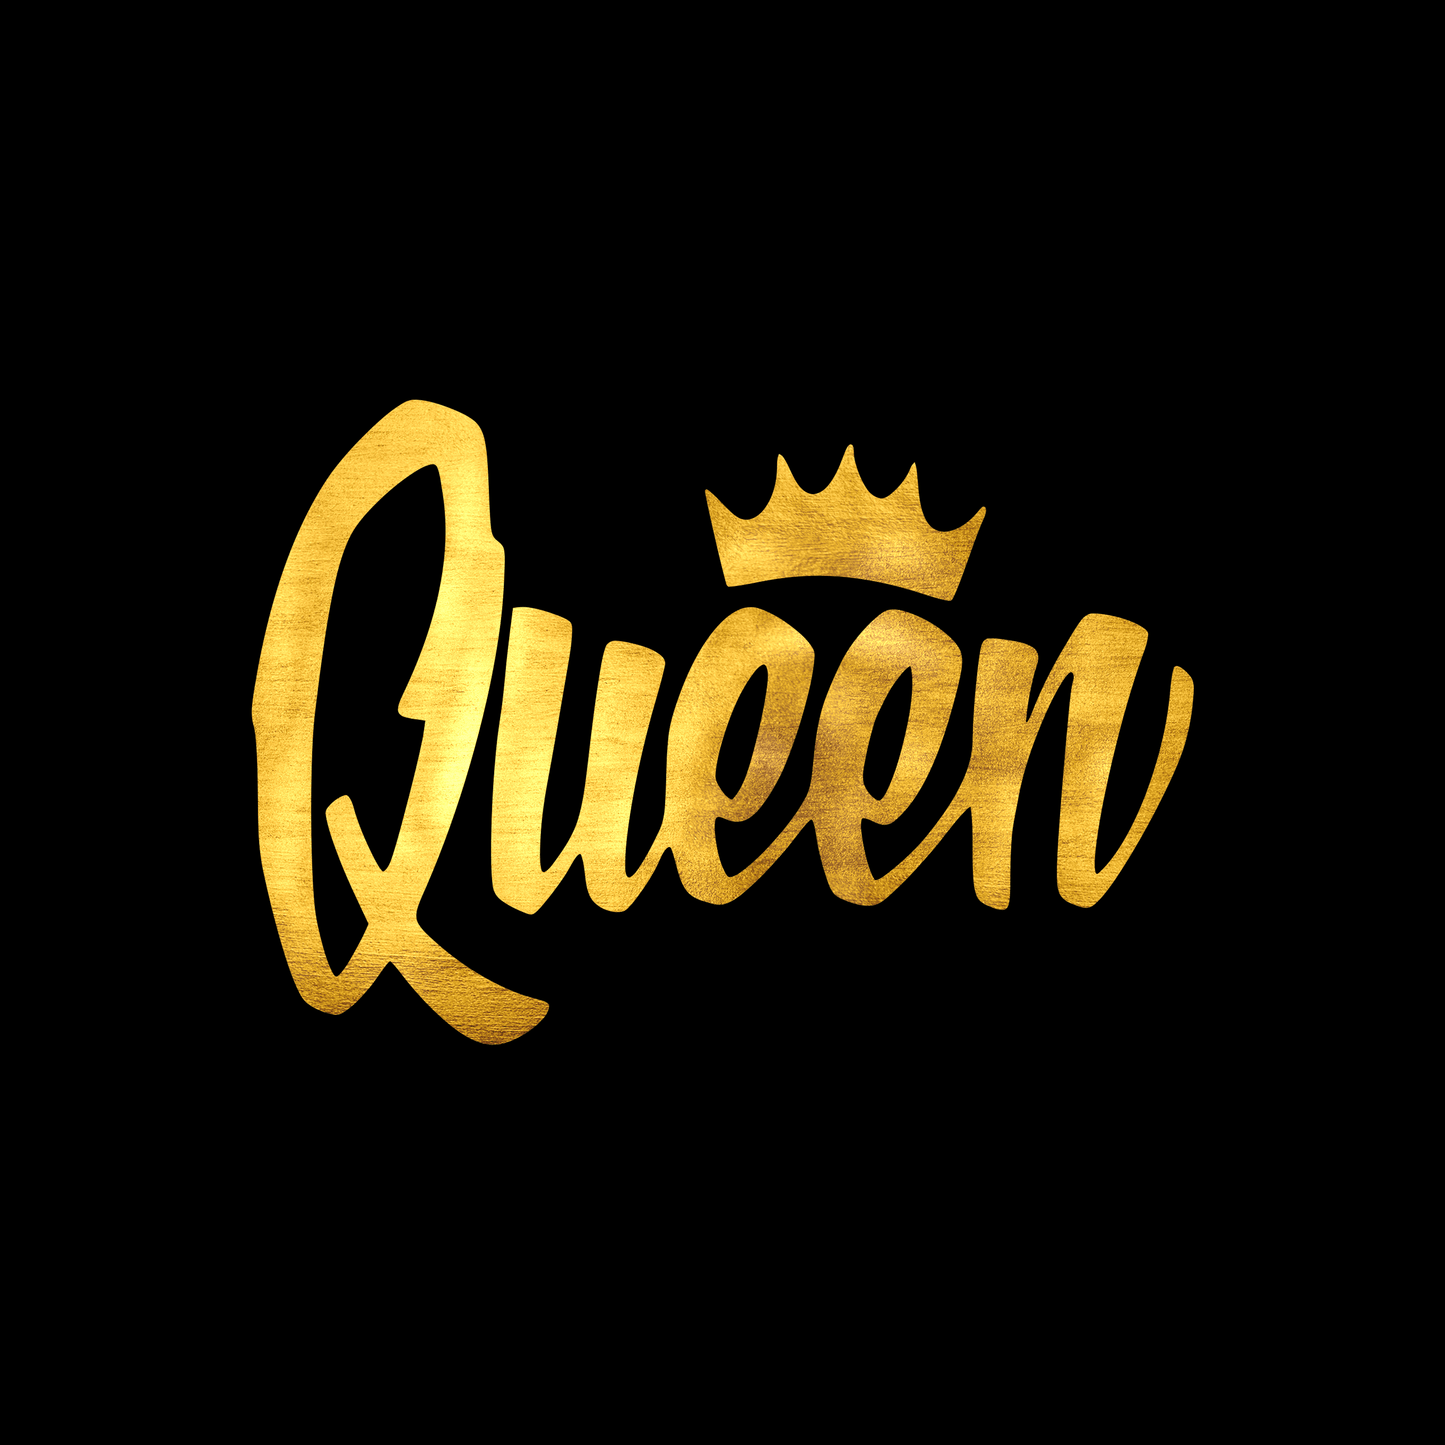 Queen sticker decal